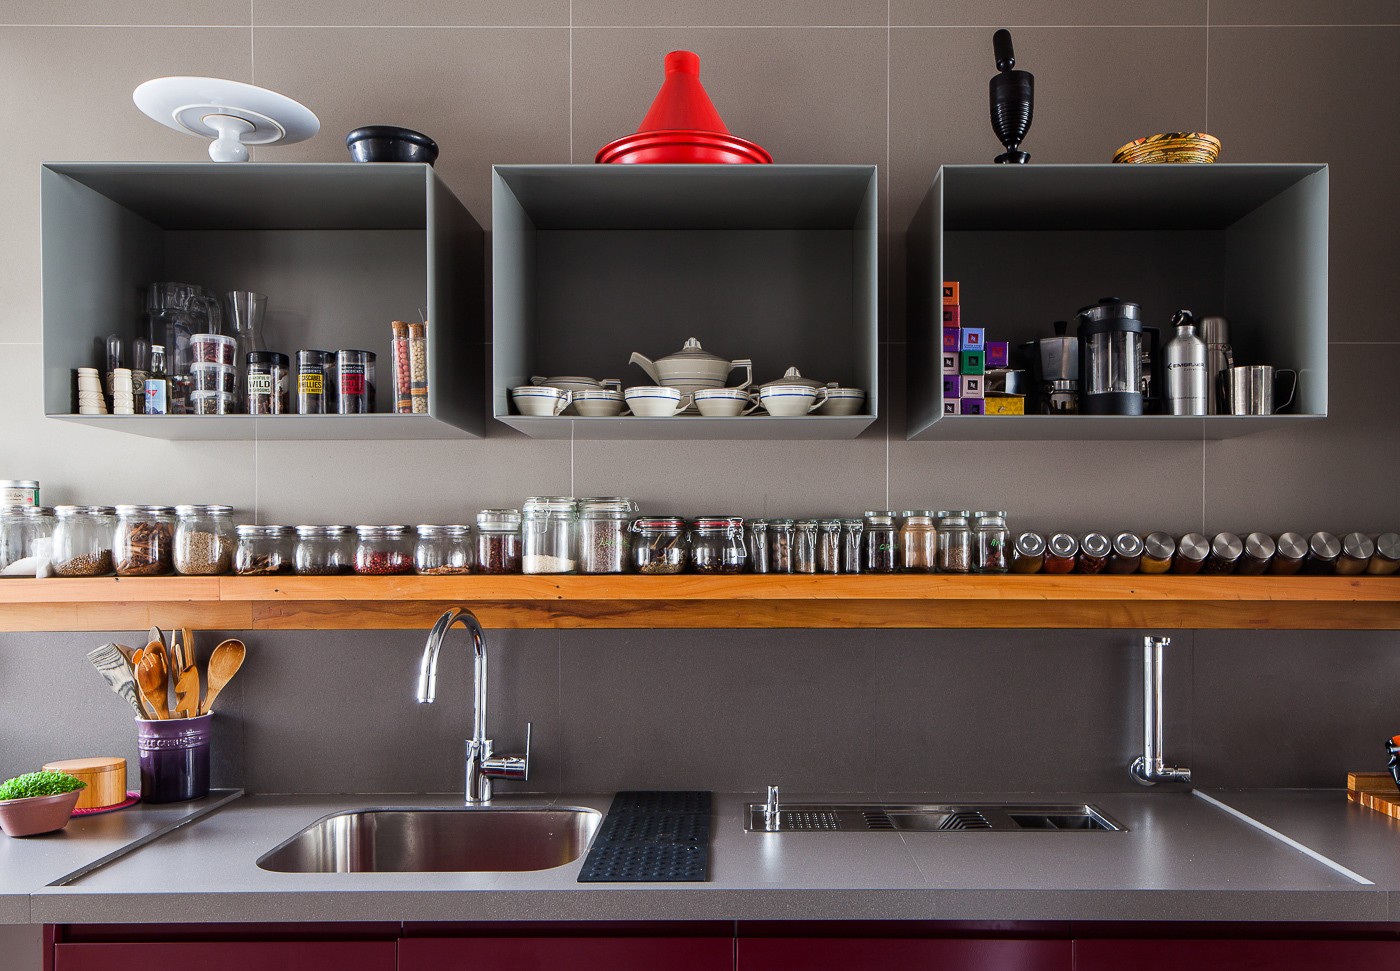 Décor do dia: cozinha roxa com armário embutido e nichos de organização (Foto: Vivi Spaco)